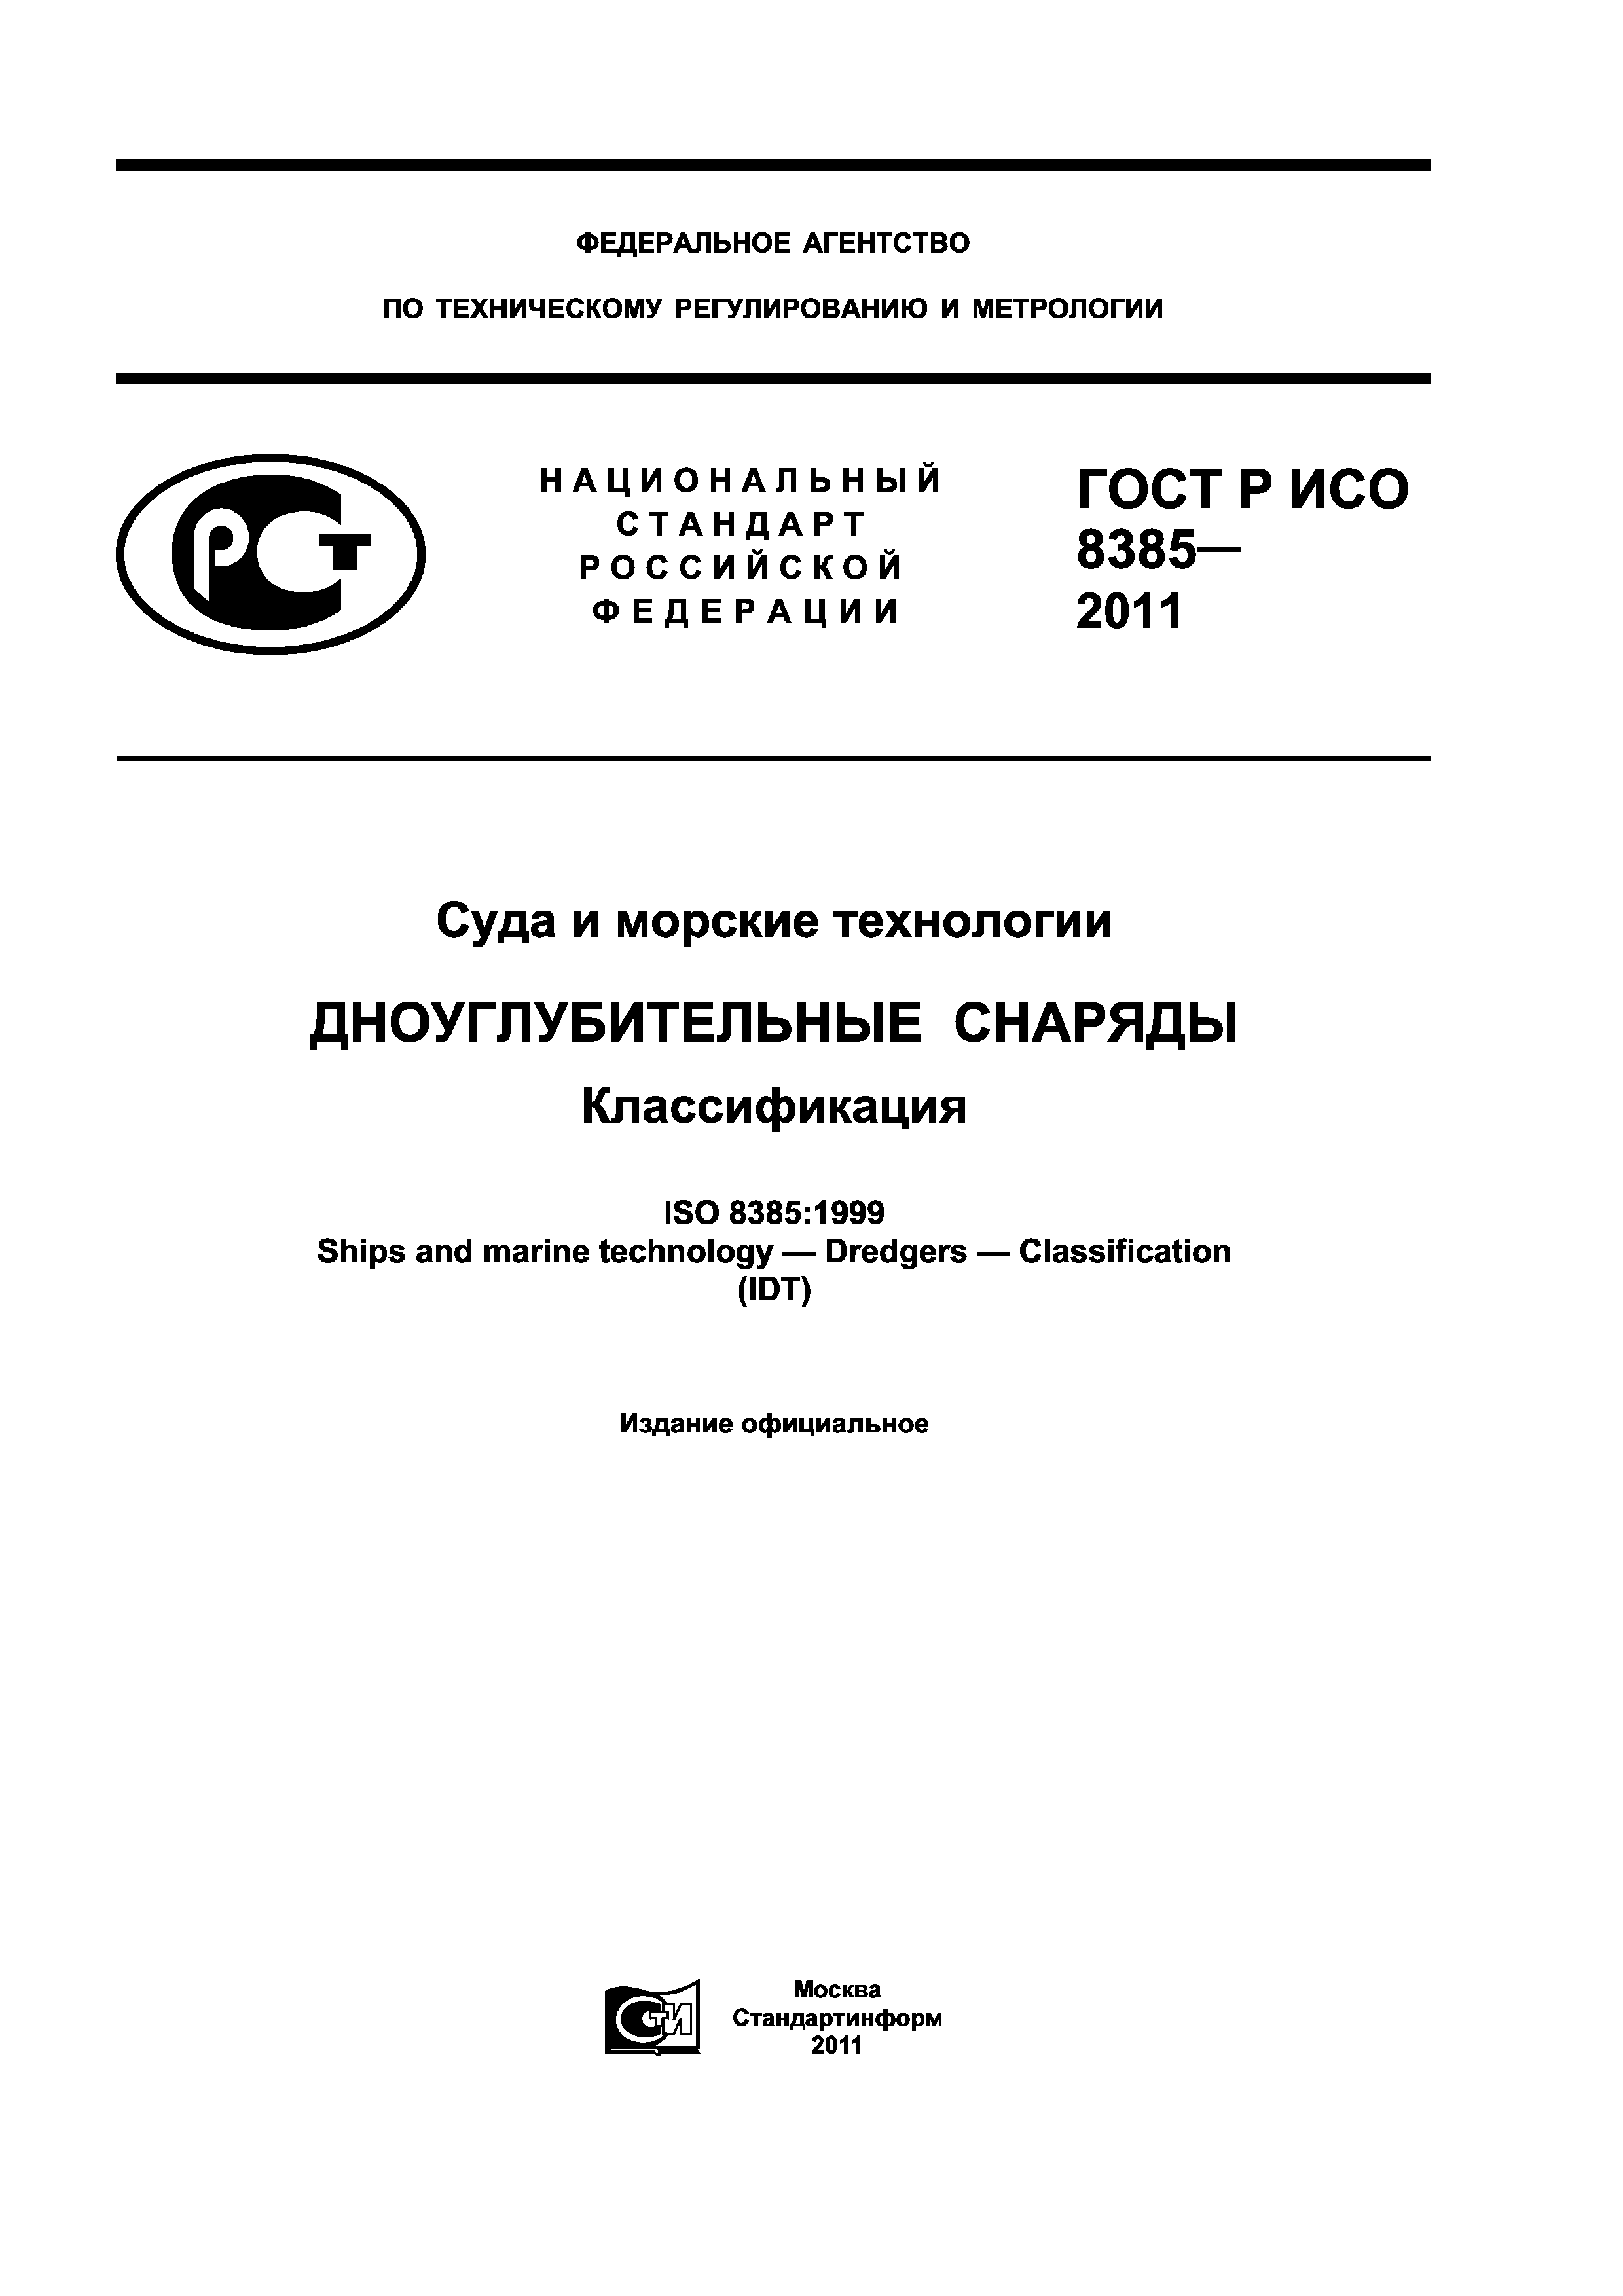 ГОСТ Р ИСО 8385-2011